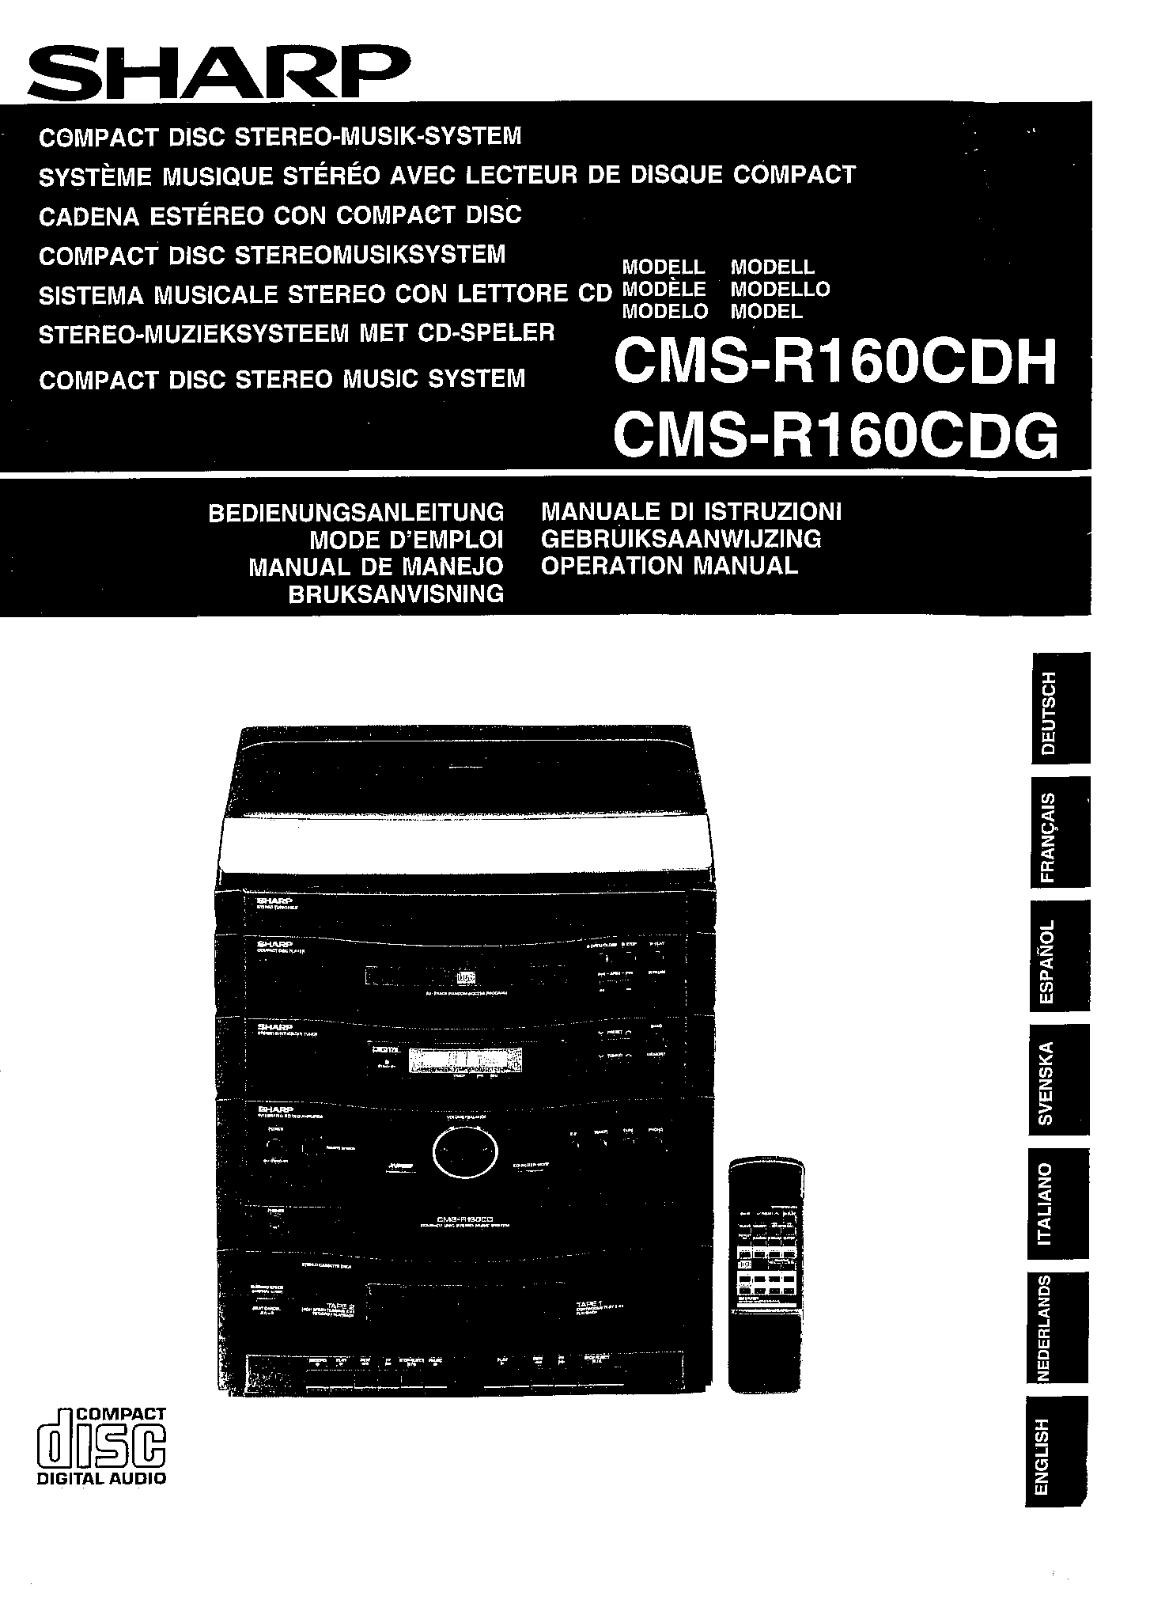 Sharp CMS-R160CDH, CMS-R160CDG Manual